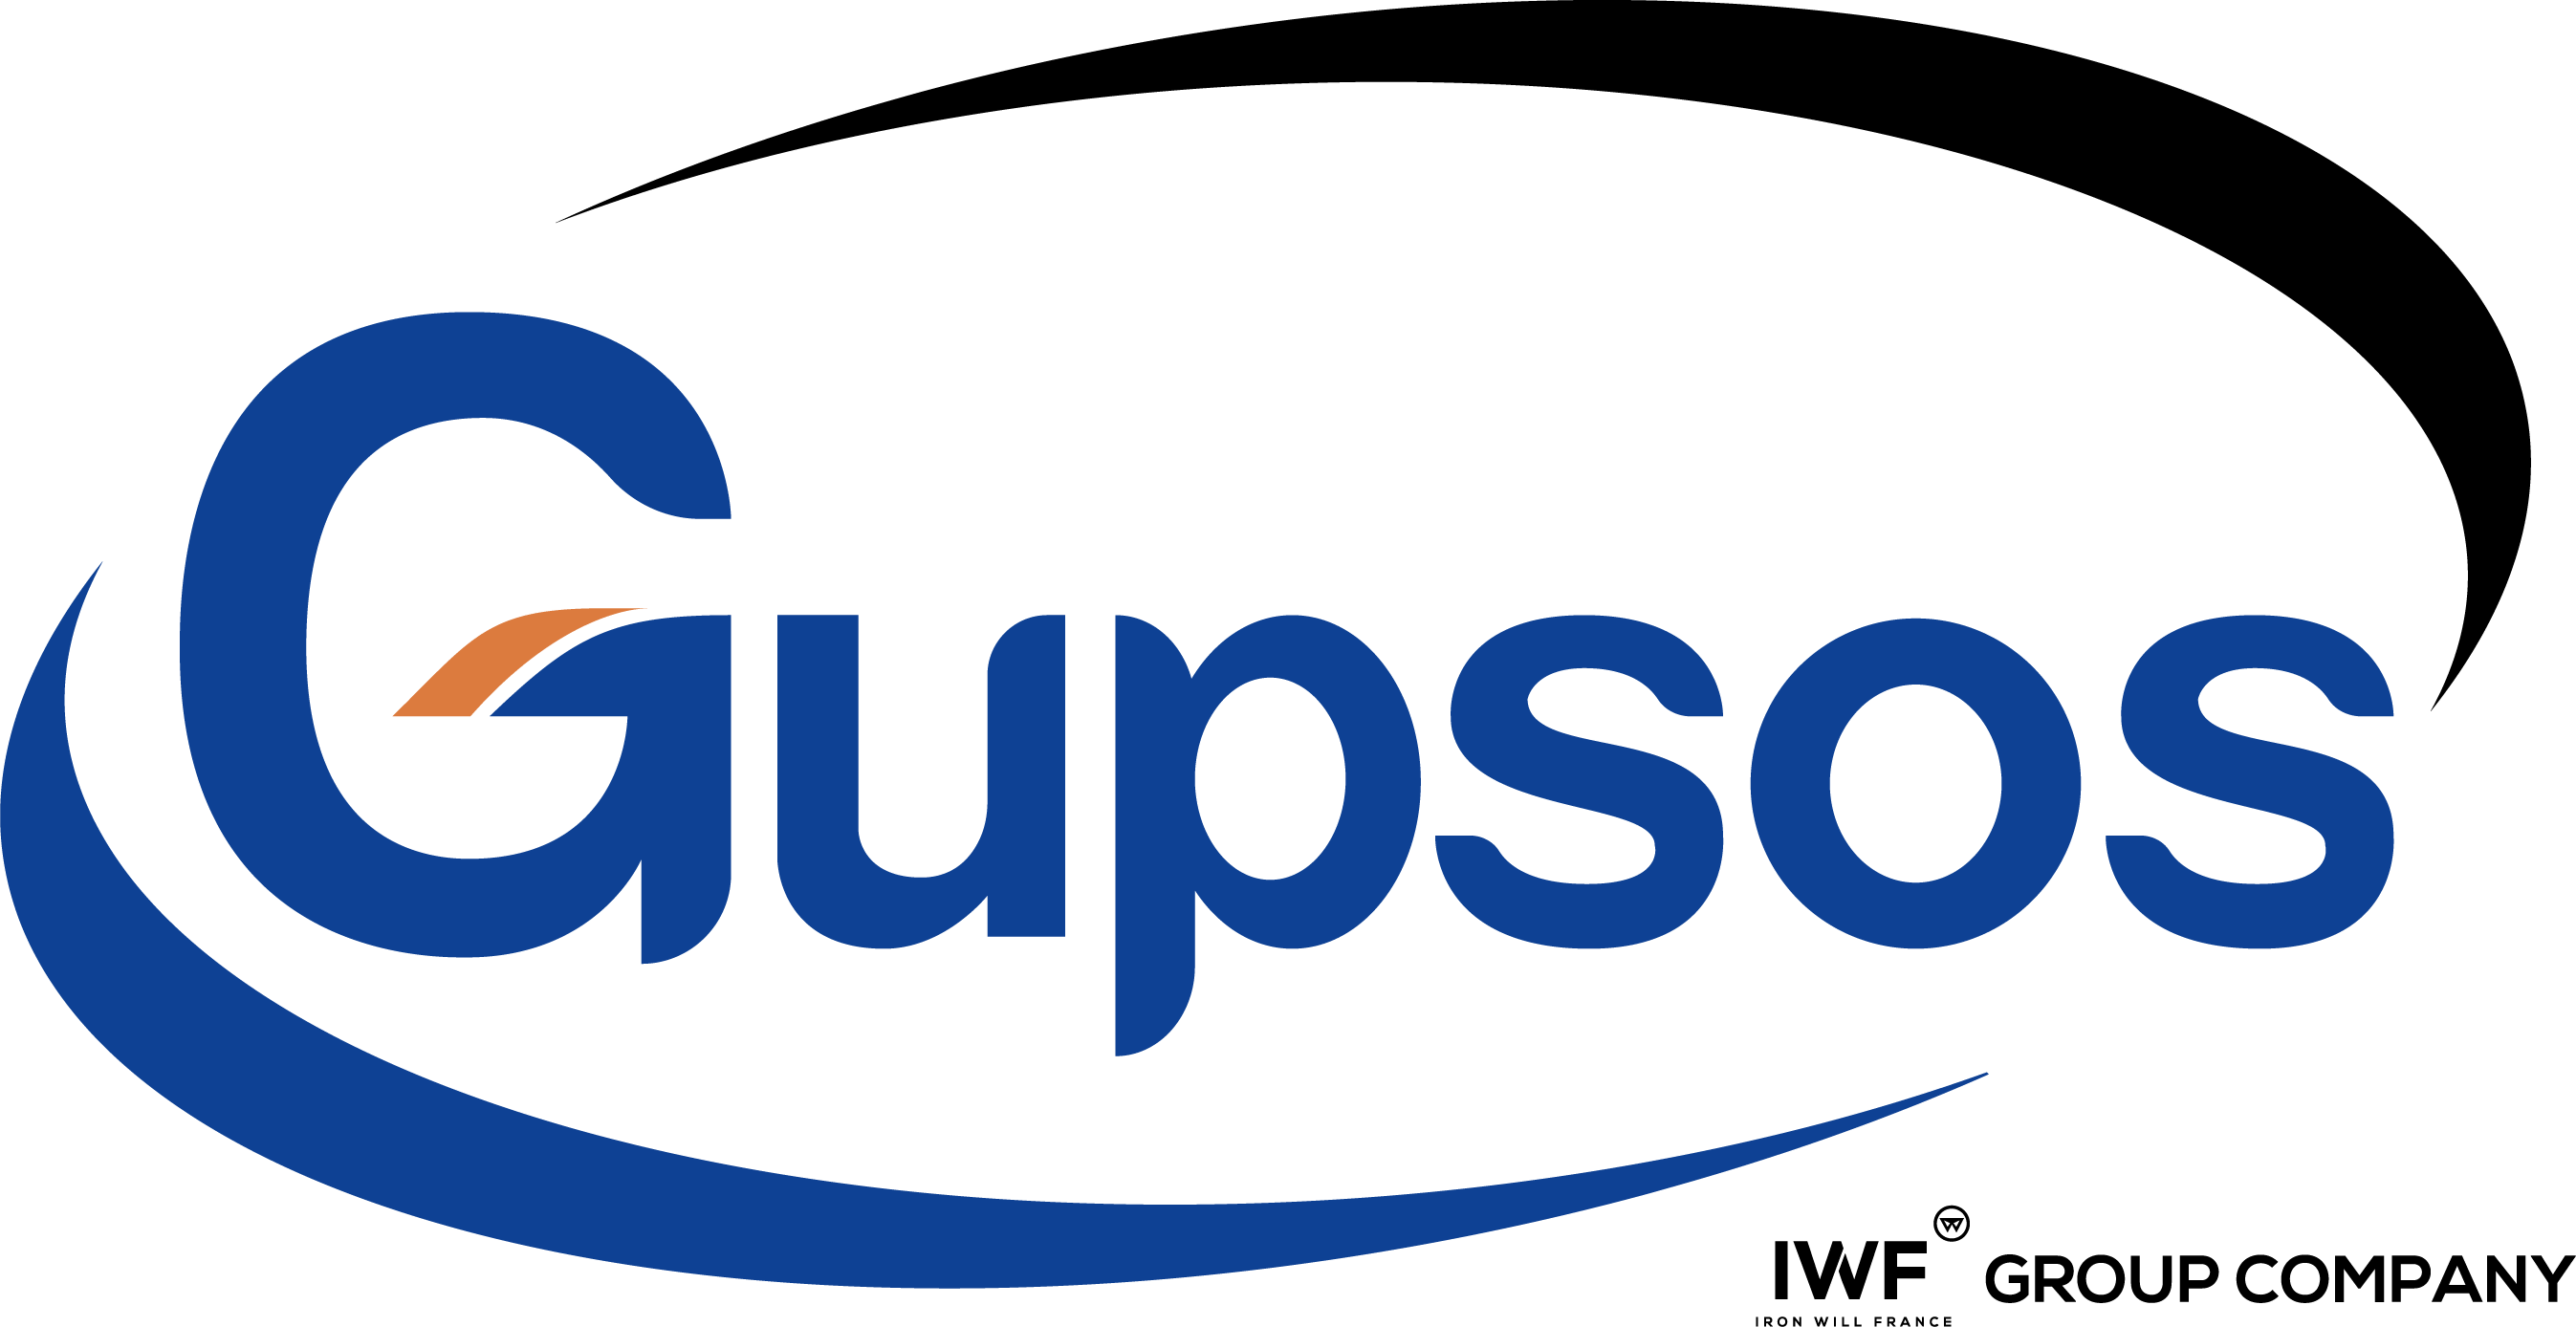 GUPSOS - Groupe IWF